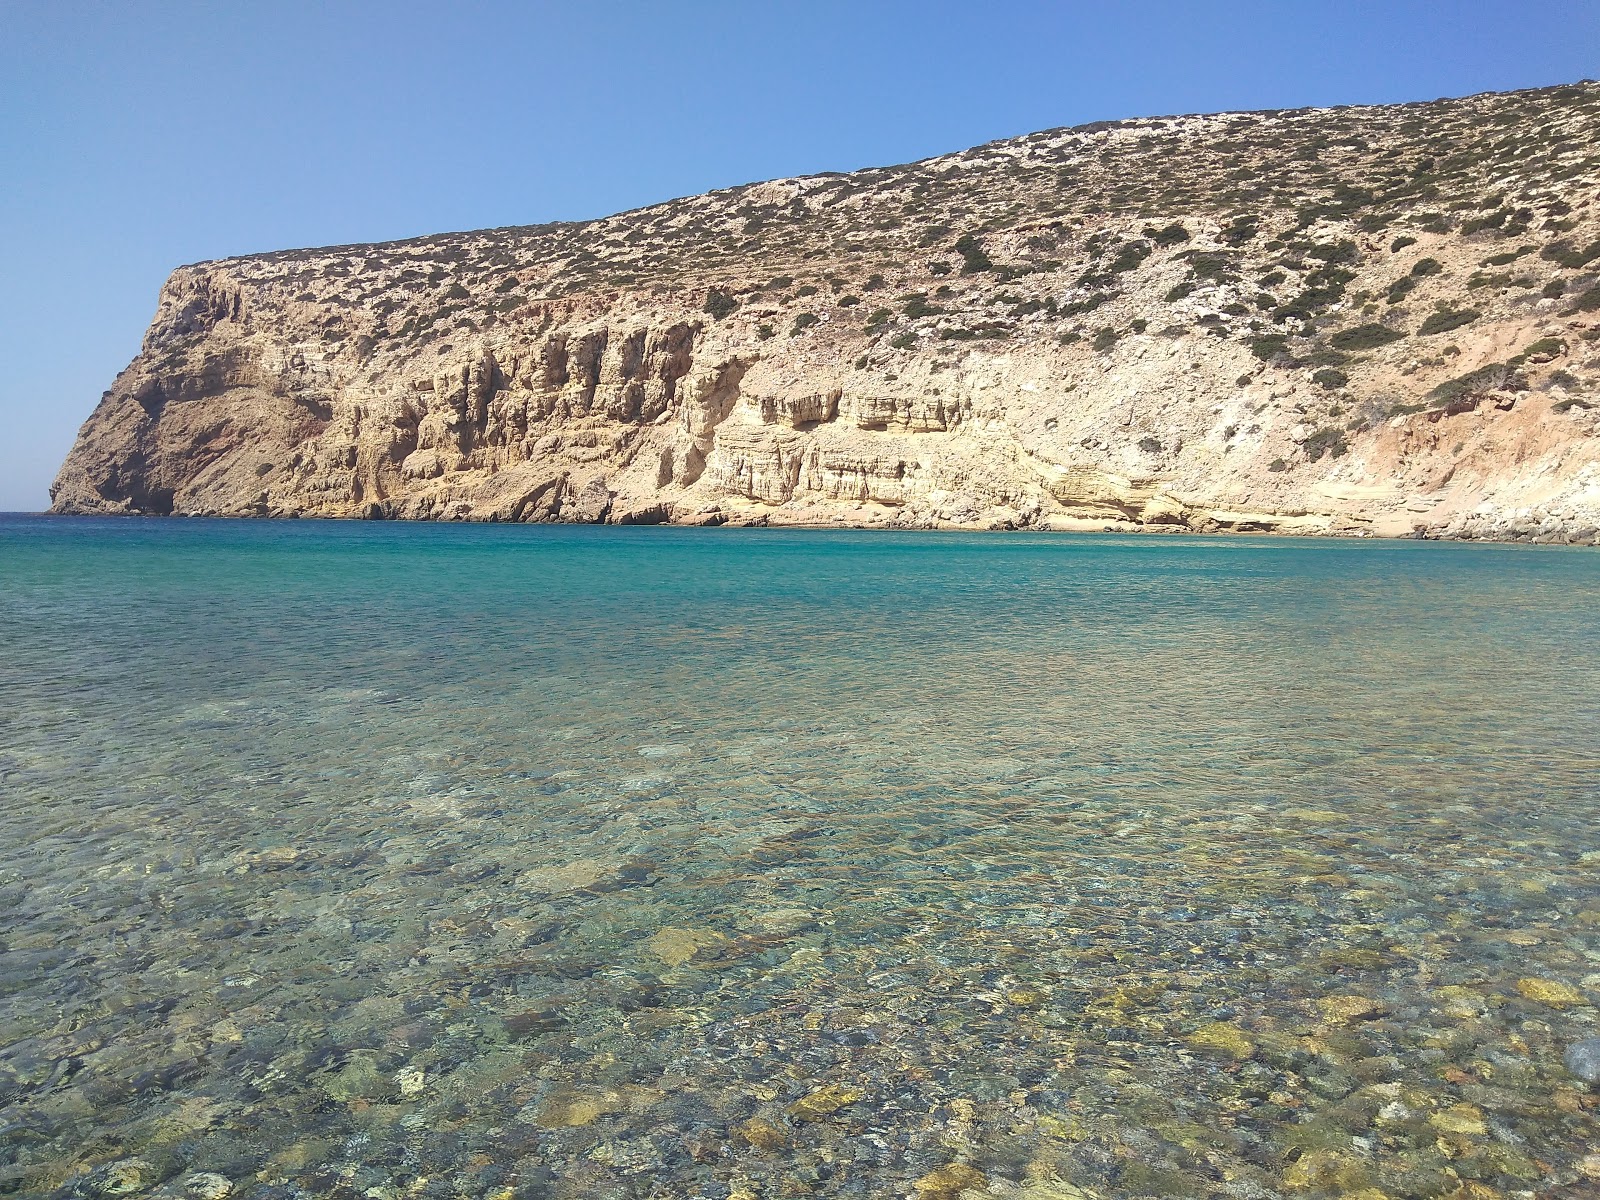 Foto de Helatros Beach Kasos Greece localizado em área natural